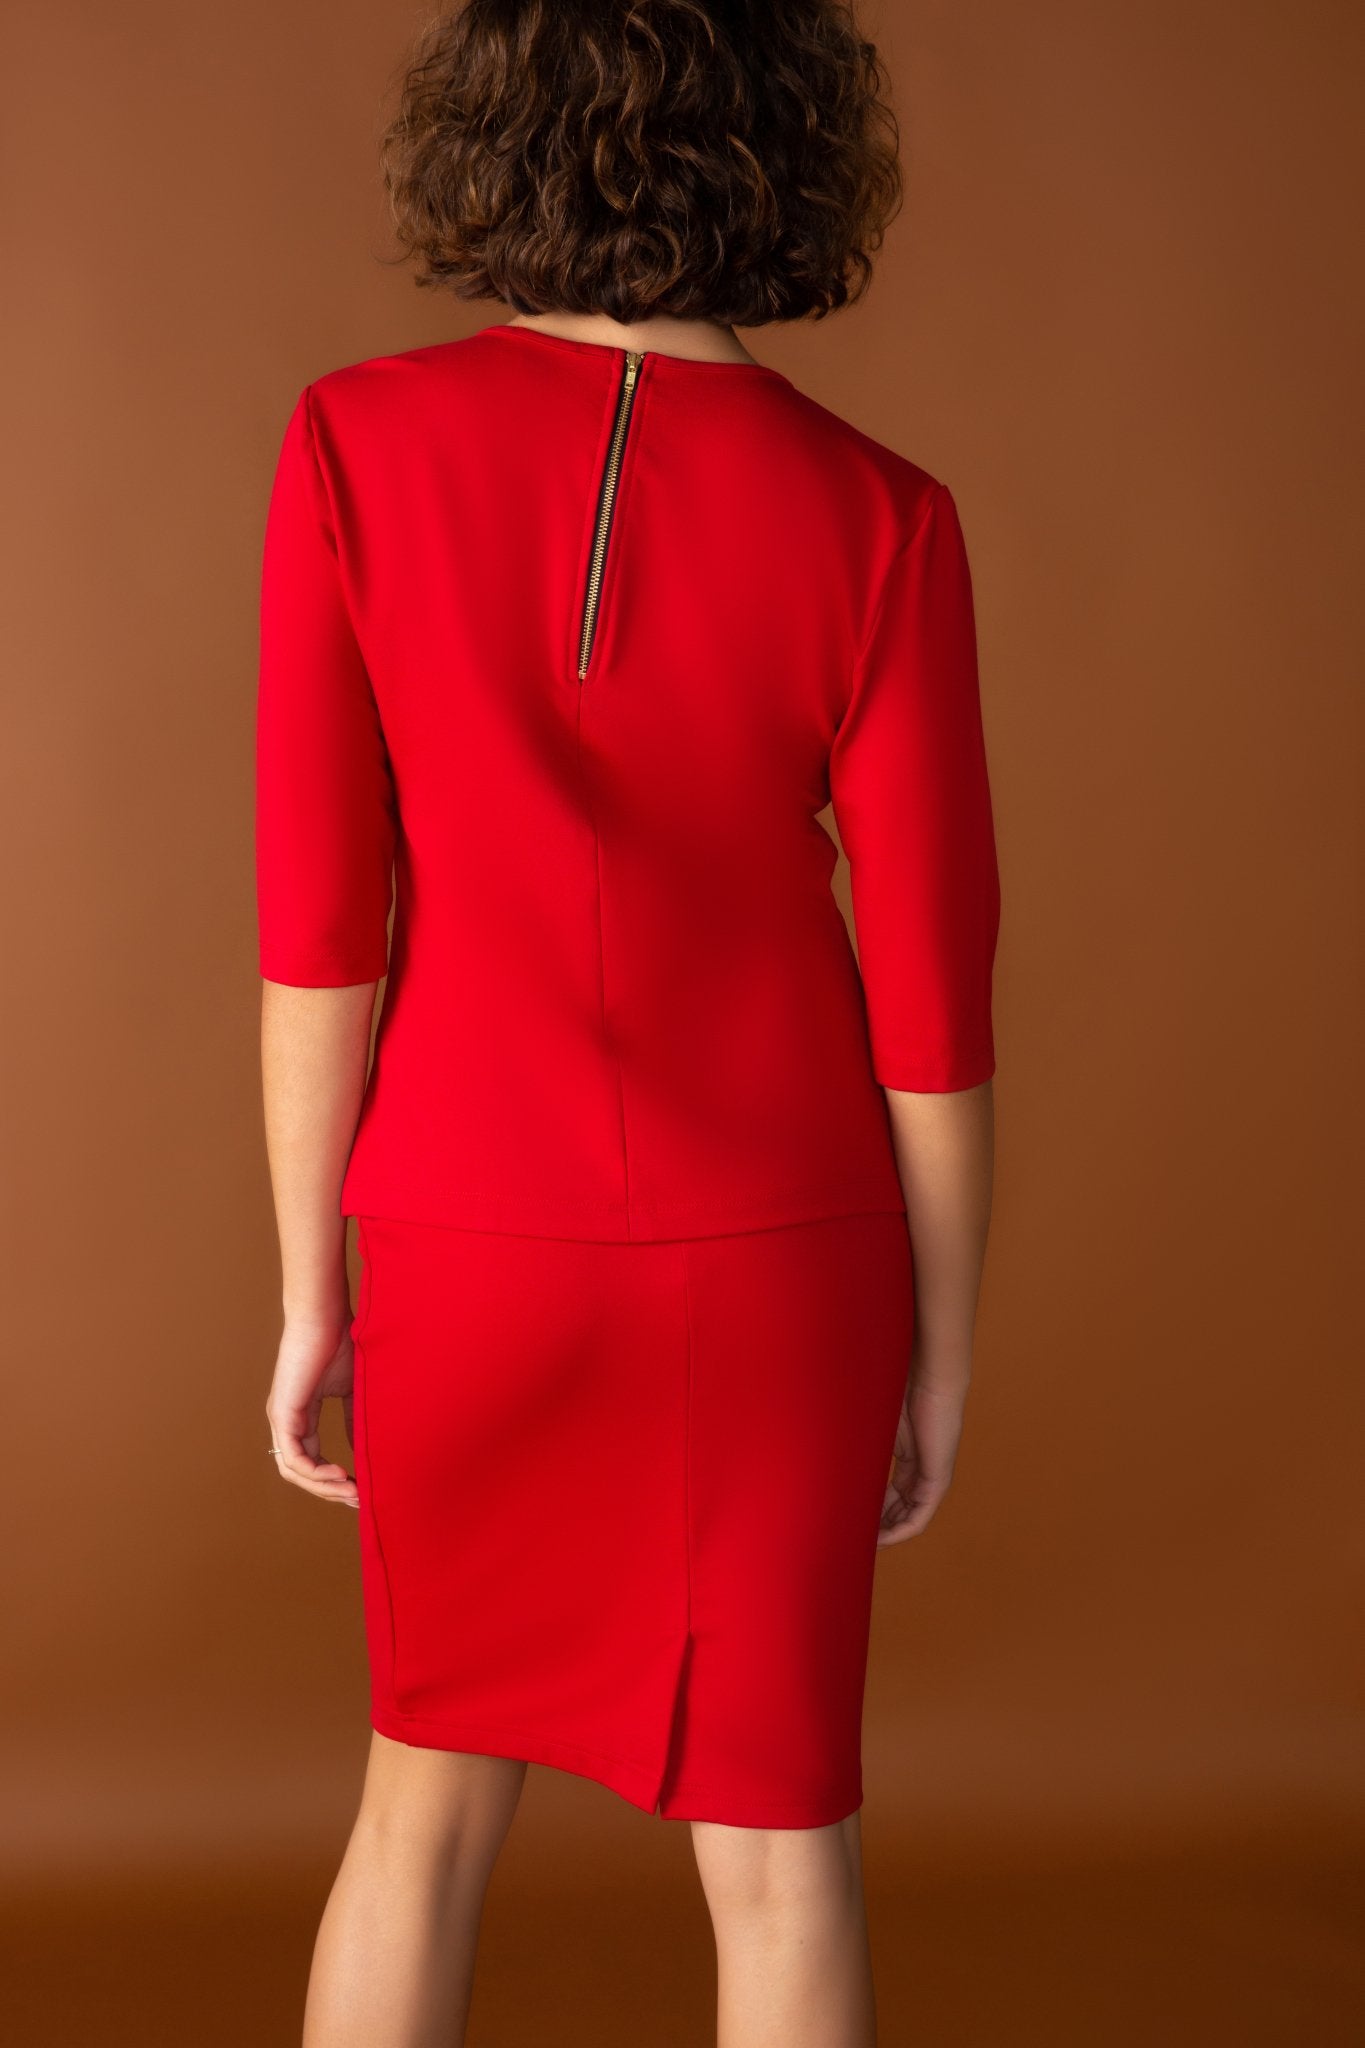 Veronica Ponte Half Sleeve Sleeve Top | Red - Chloe Kristyn